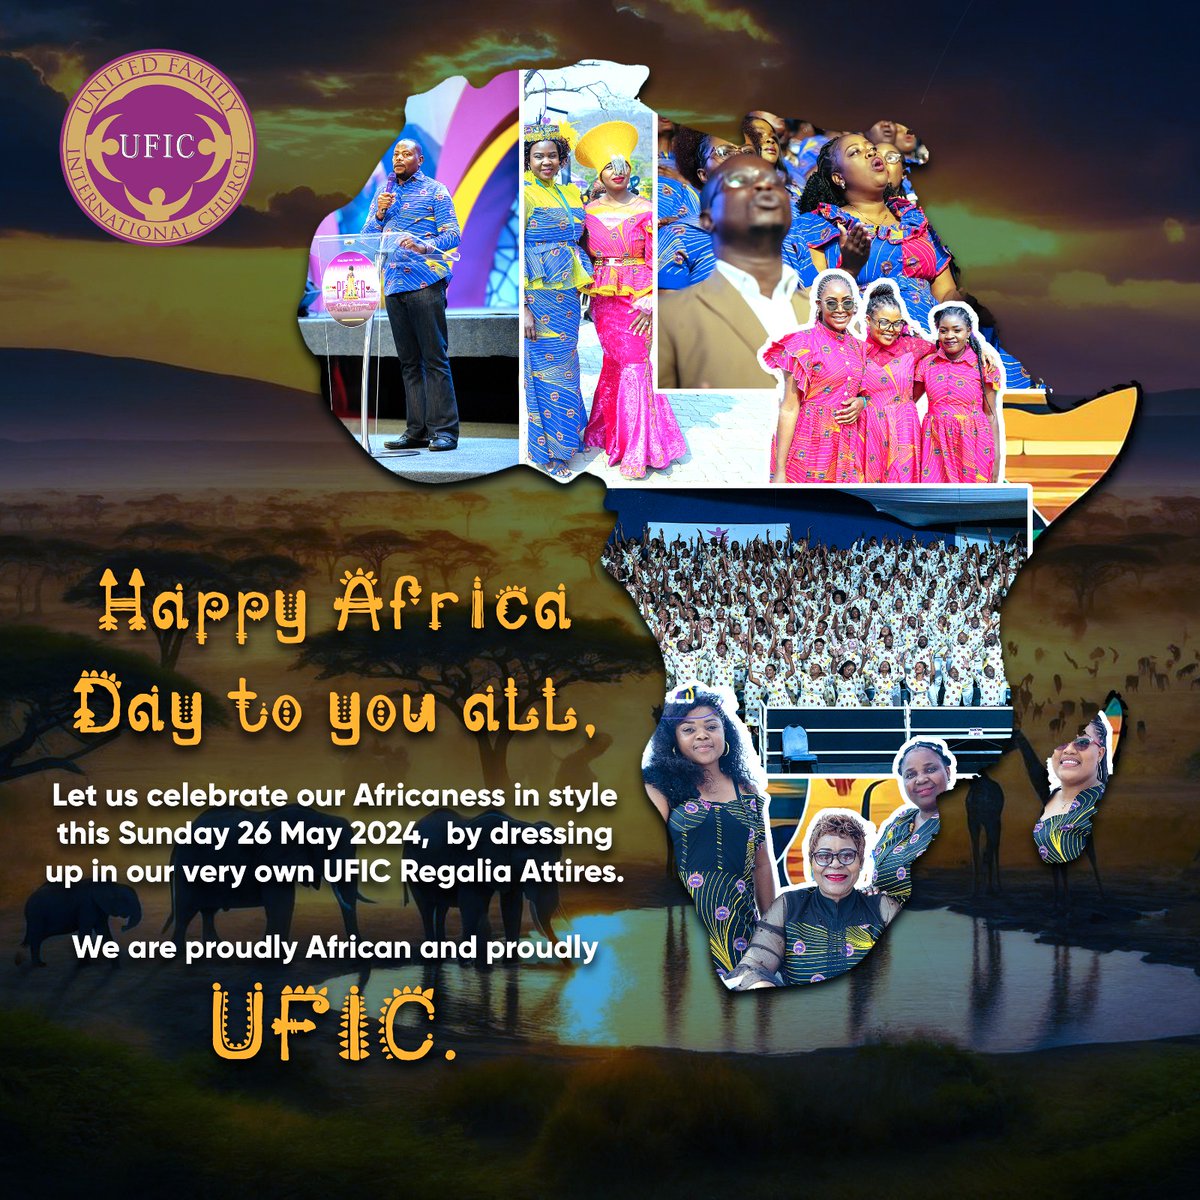 Let us celebrate our Africaness in style.
#proudlyafrican
#proudlyufic 
#unitedfamilyinternationalchurch 
#EmmanuelMakandiwa 
#RuthEmmanuelMakandiwa